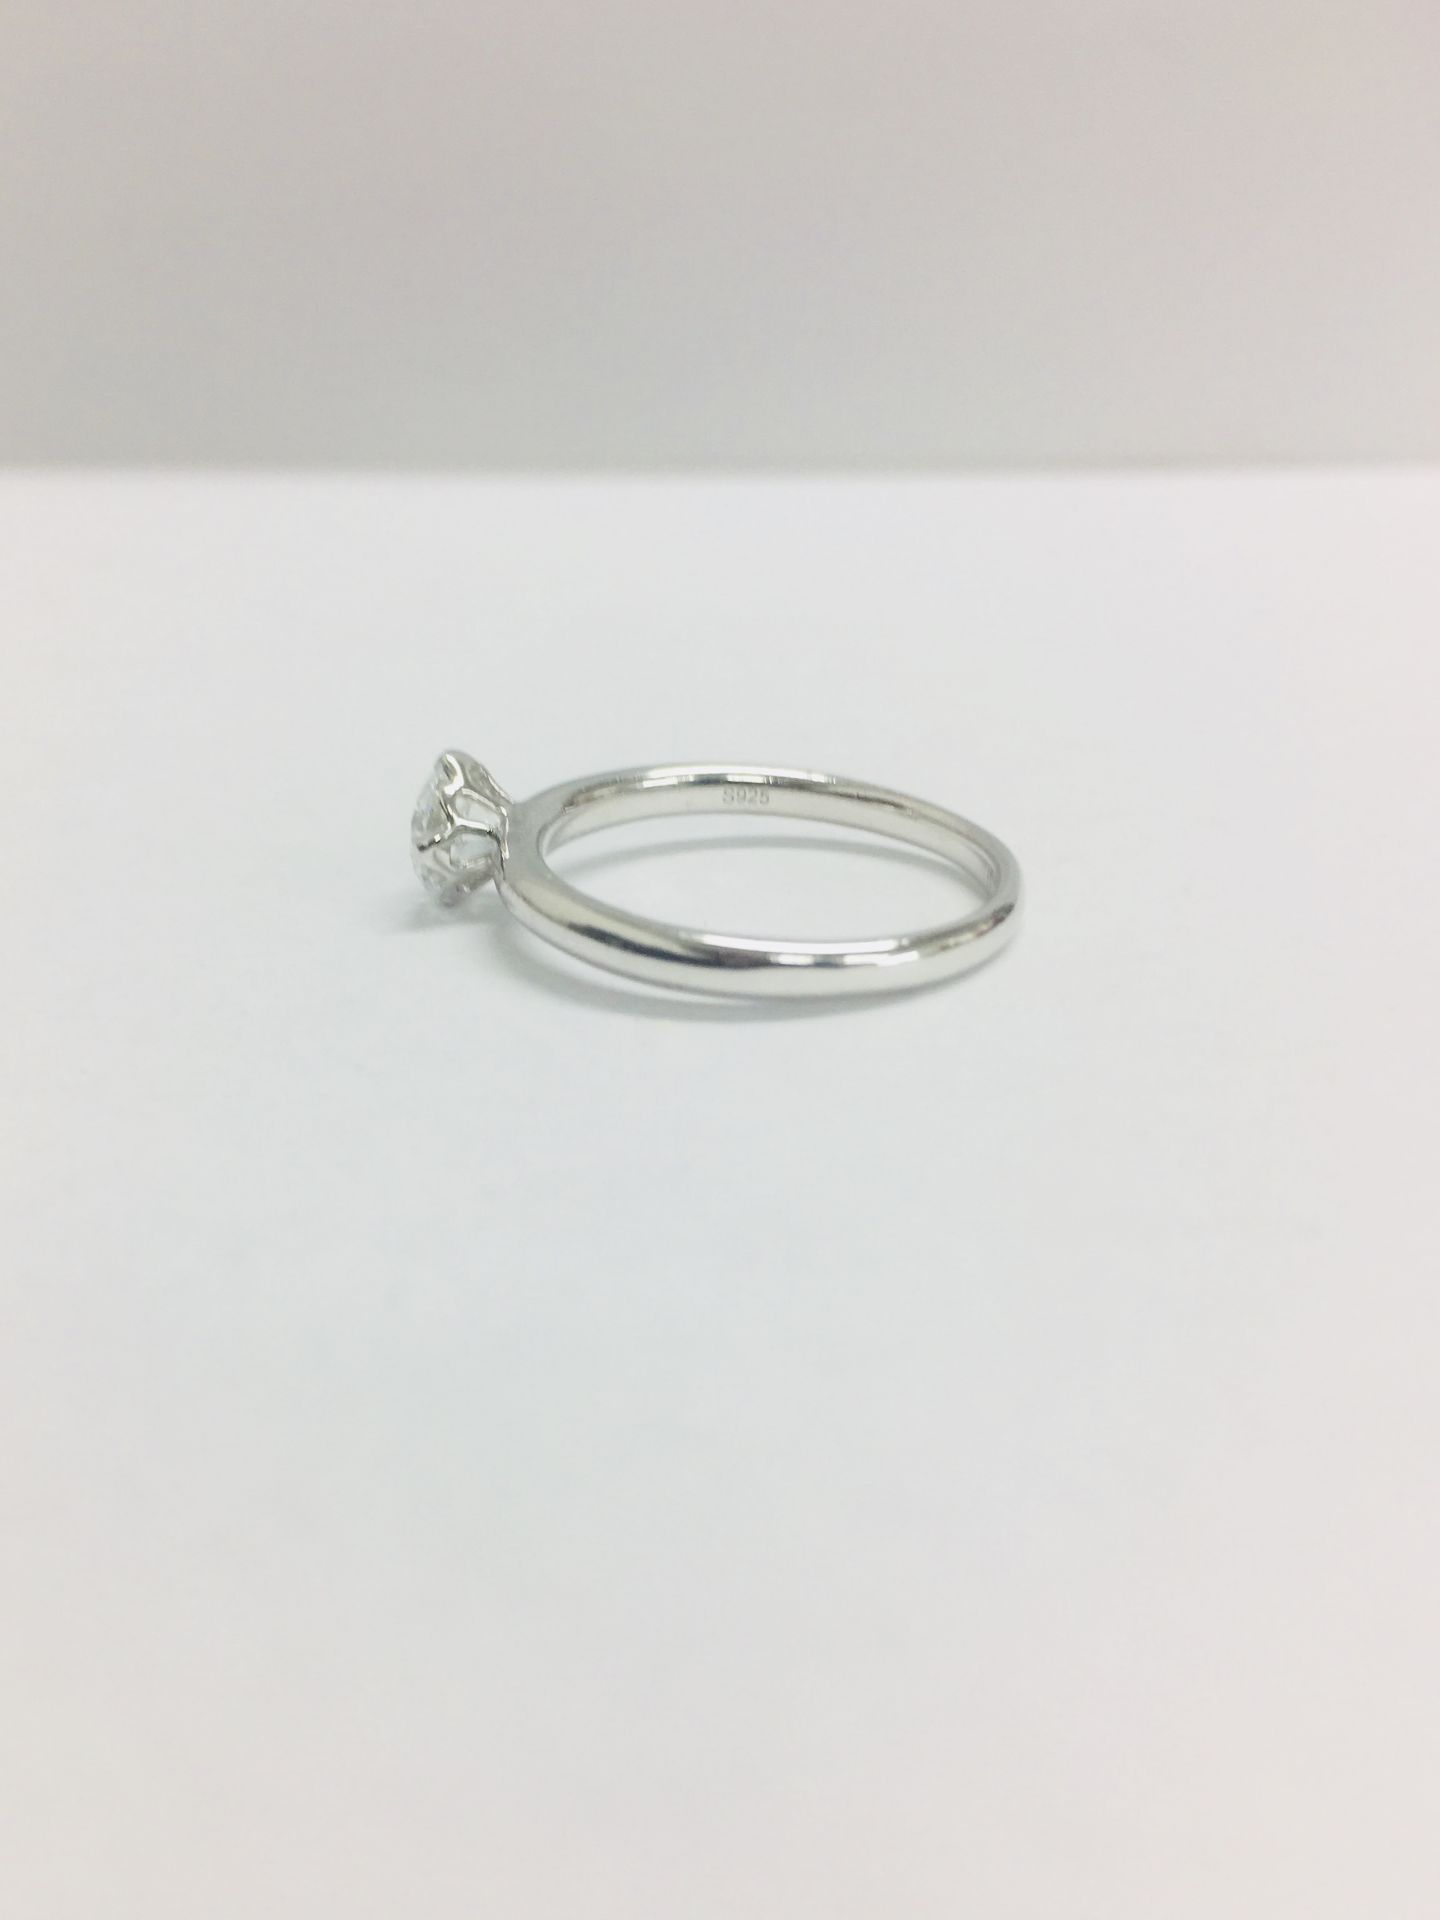 Platinum diamond solitaire ring,0.50ct brillliant cut diamond D colour vs clarity,2.9gms platinum , - Image 5 of 7